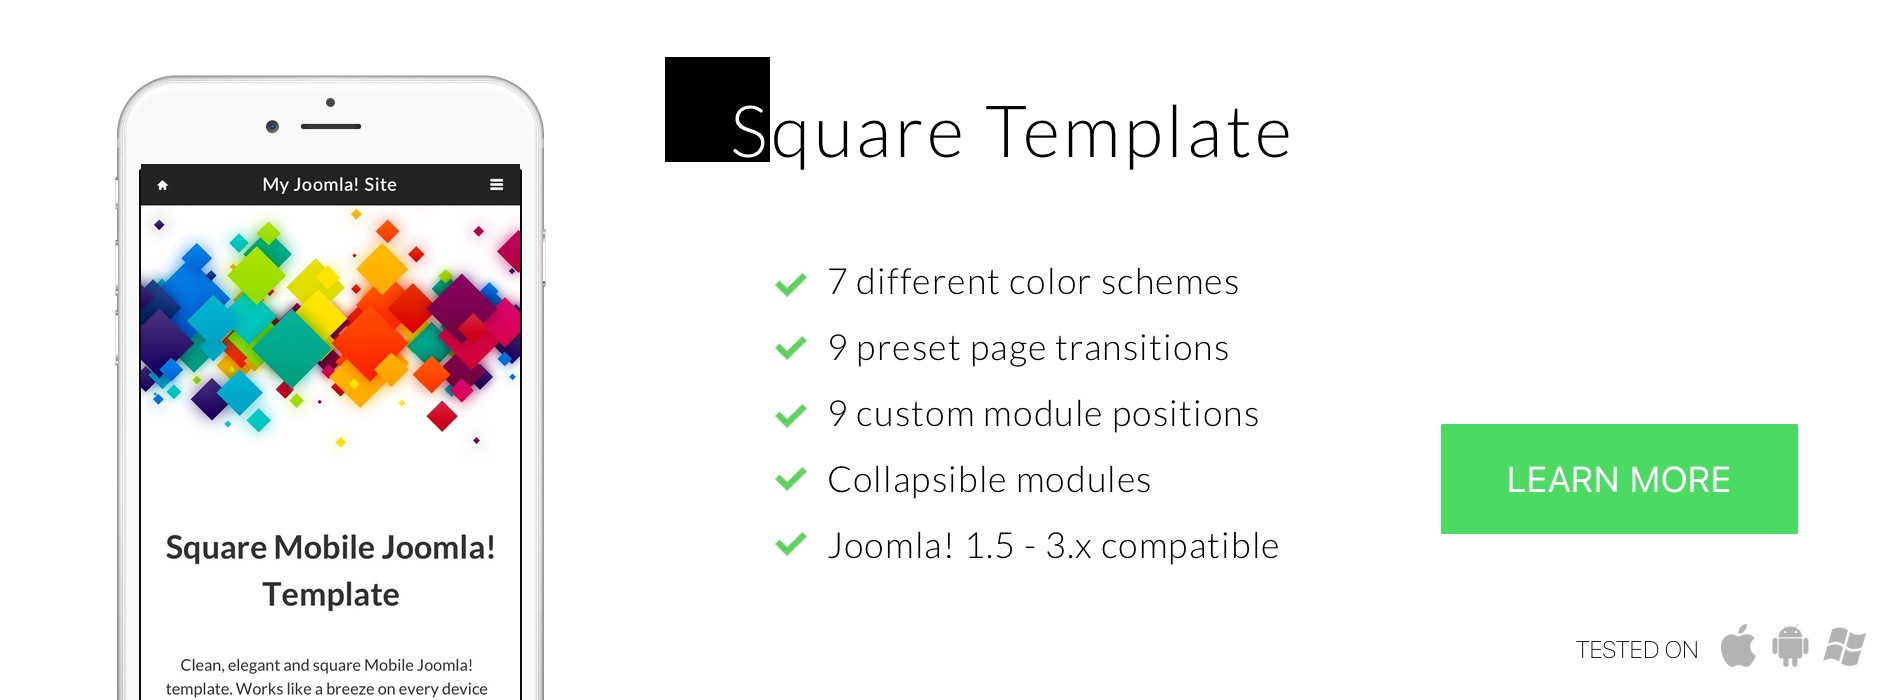 Square Mobile Joomla! template